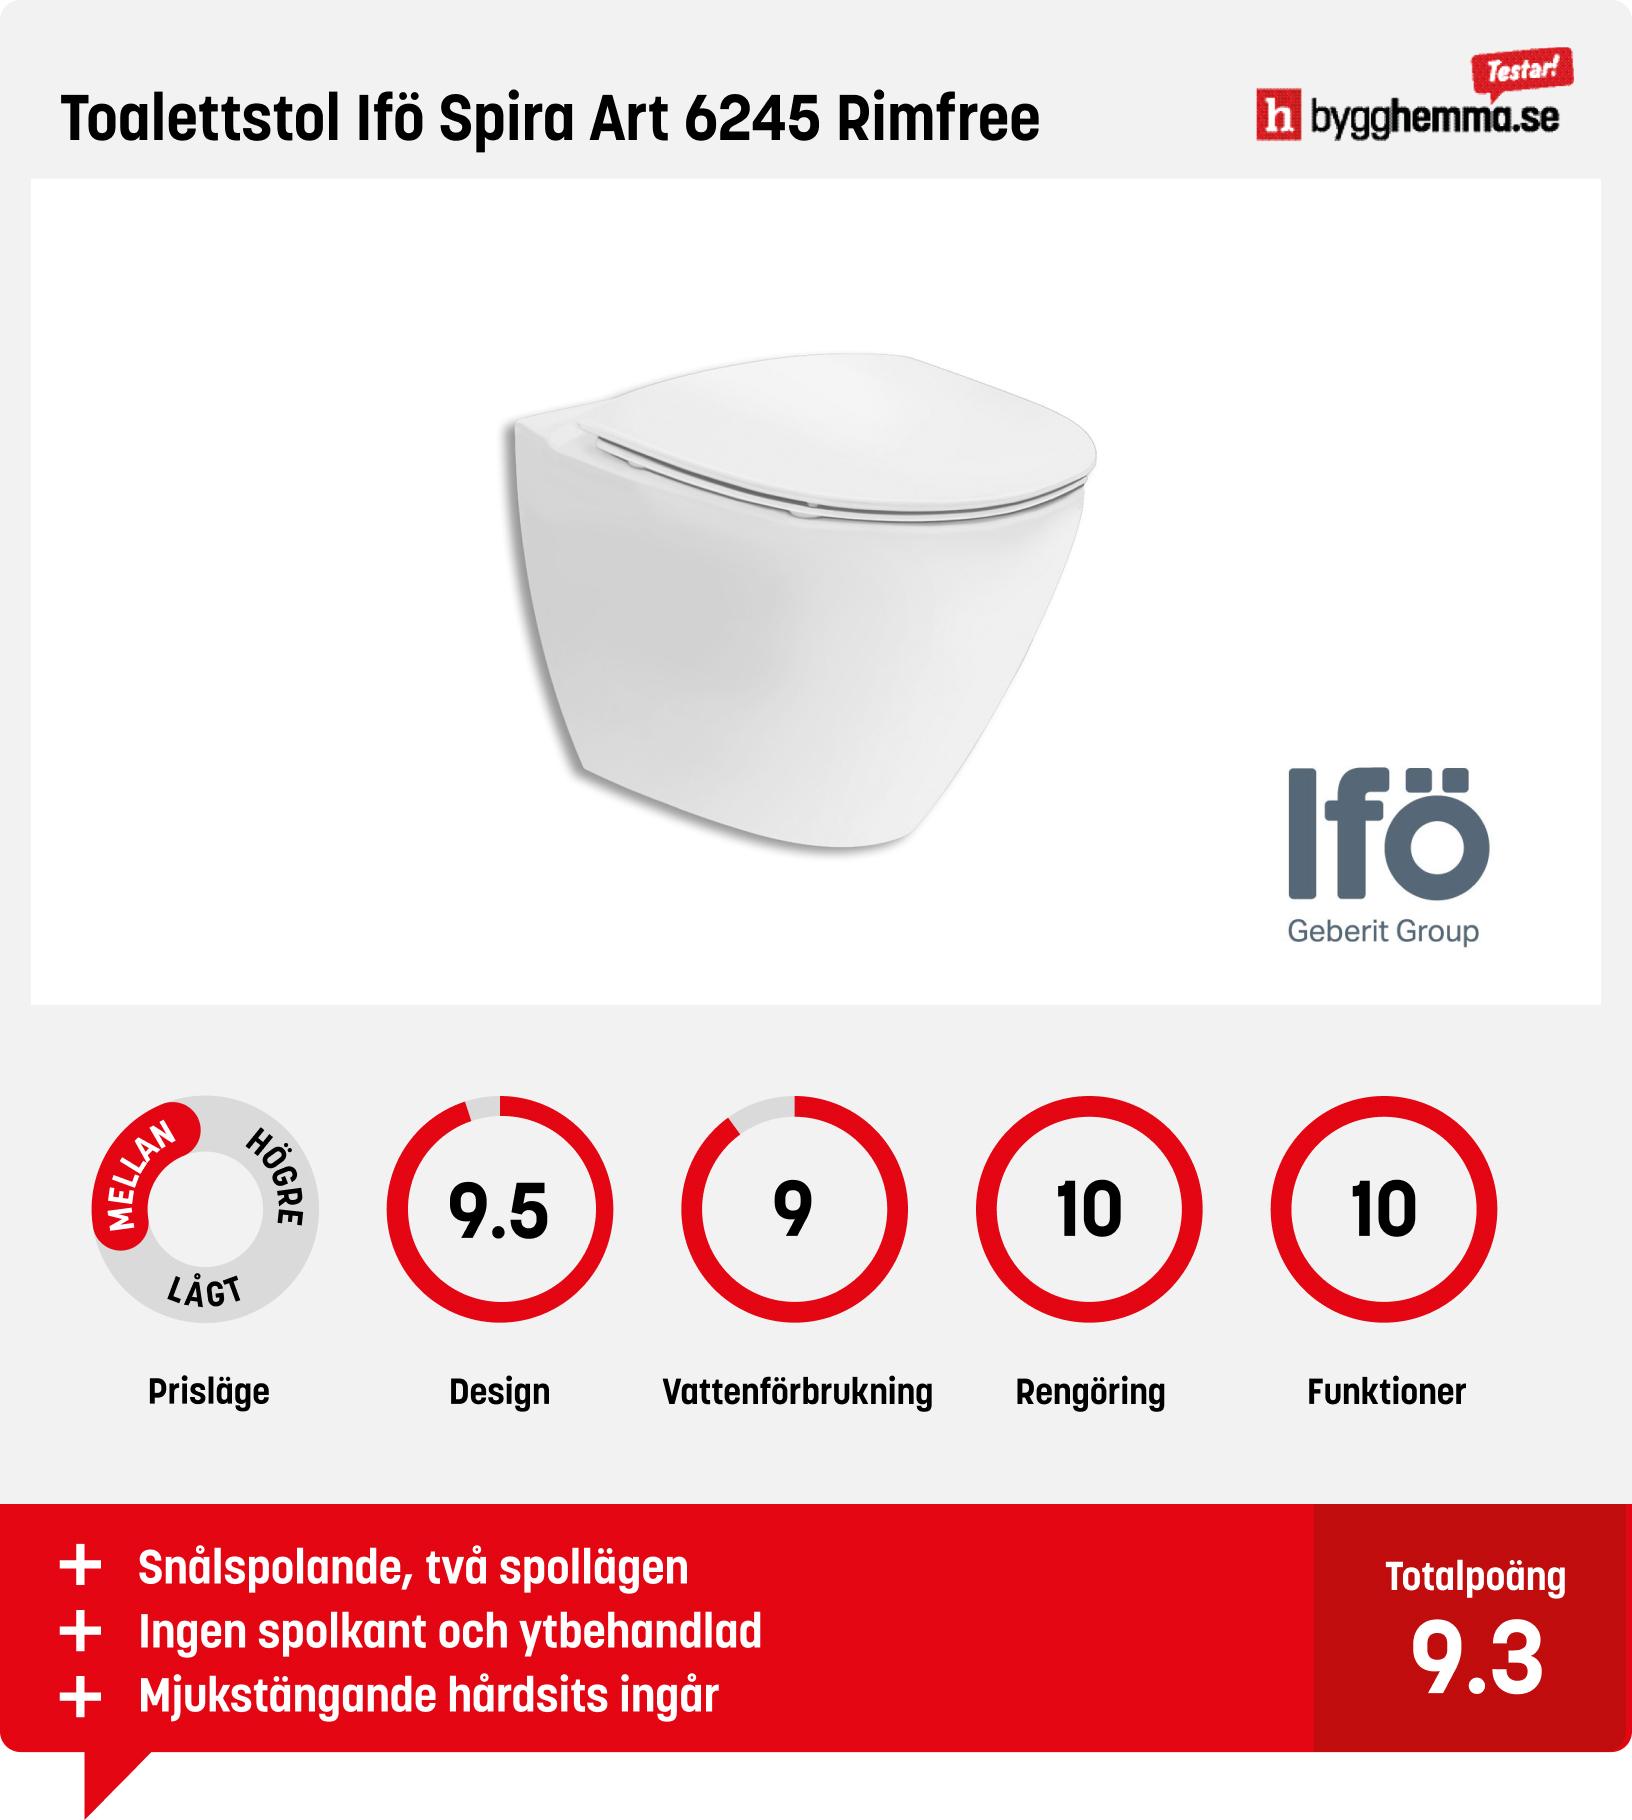 Vägghängd toalett bäst i test - Toalettstol Ifö Spira Art 6245 Rimfree